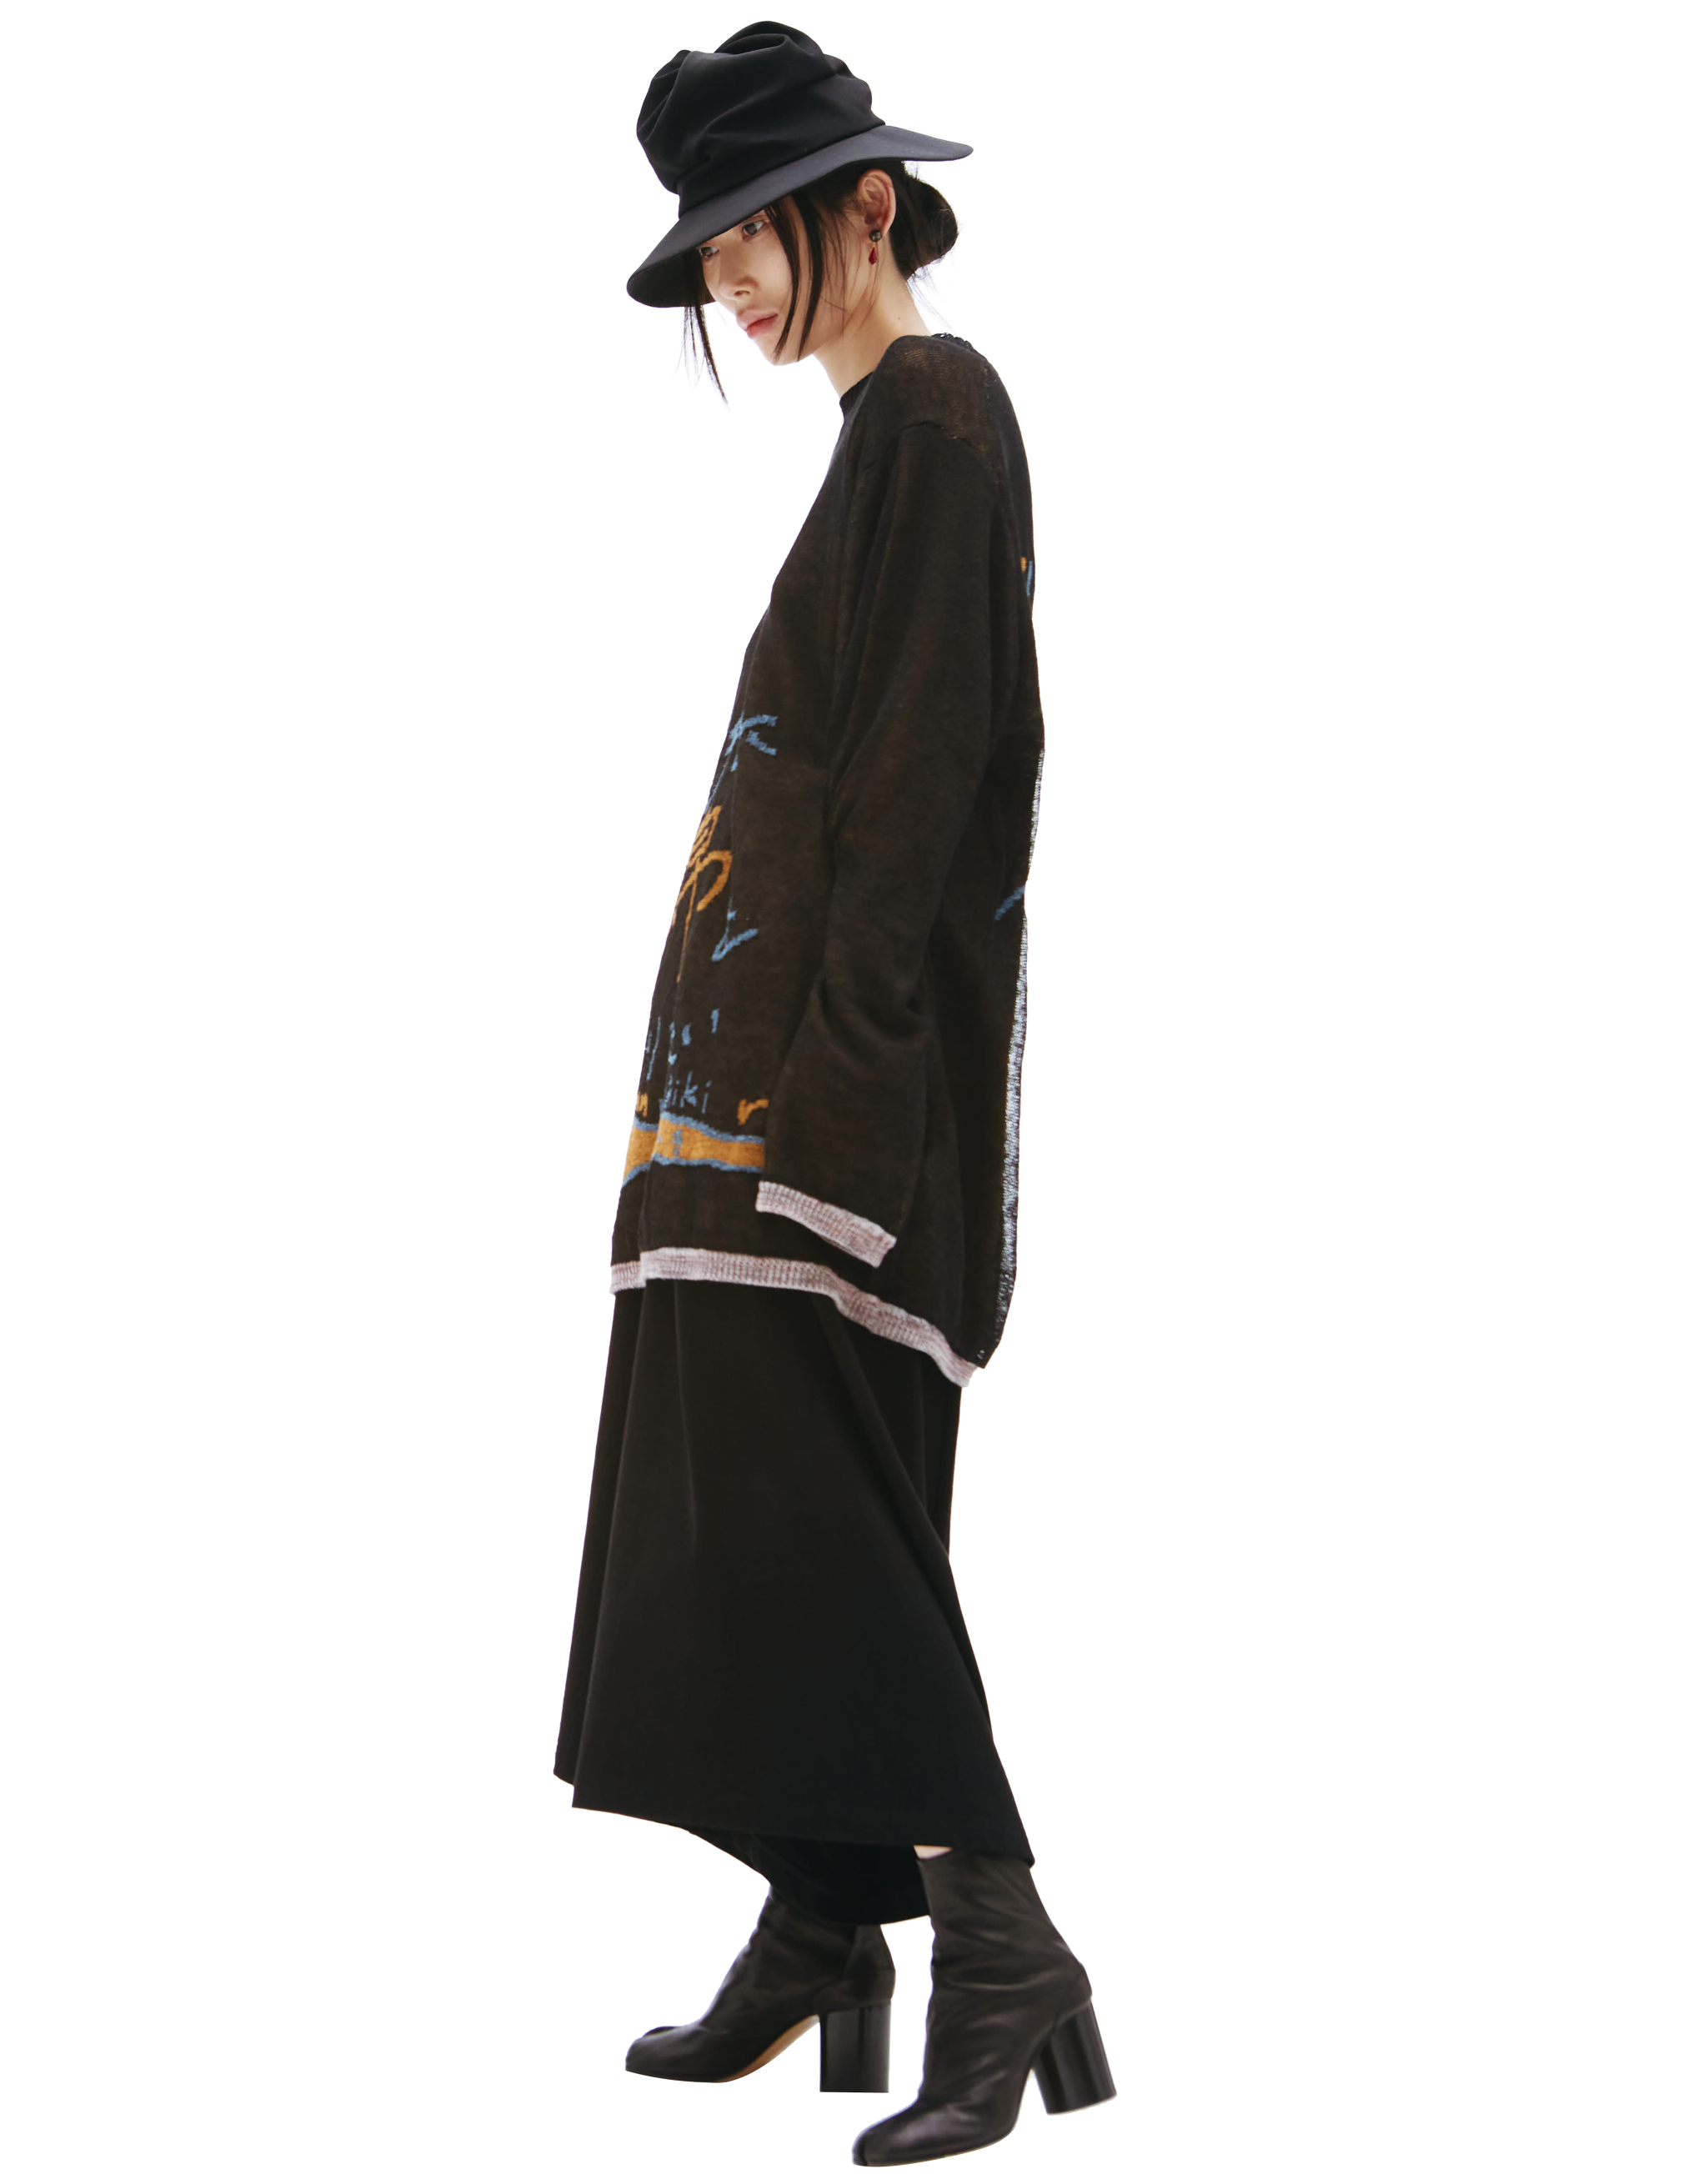 Черный свитер Whats your name Yohji Yamamoto HG-K13-373-1, размер 3 - фото 2